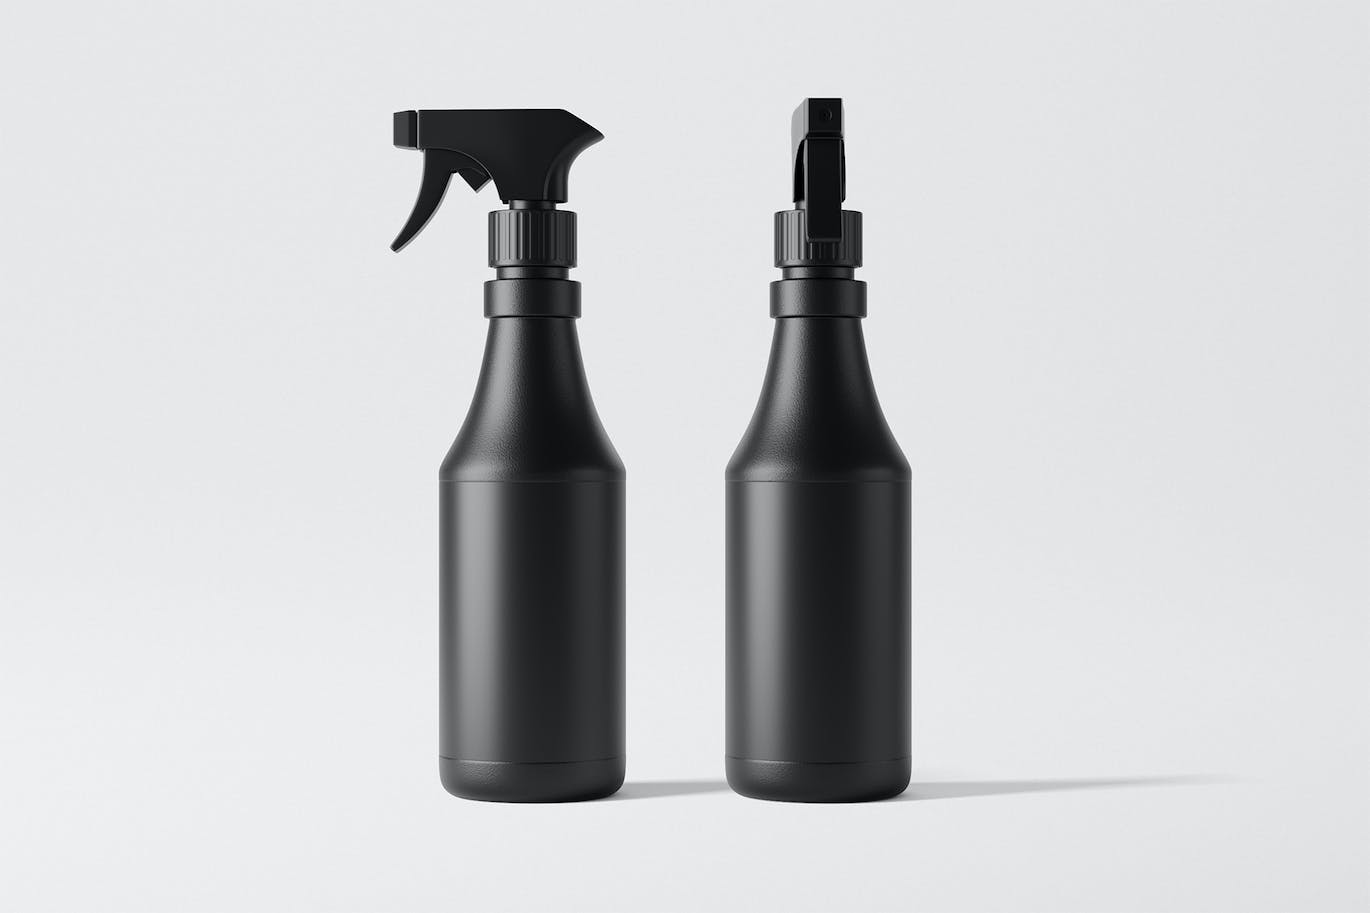 喷雾清洁剂瓶包装设计样机图 Spray Bottle Mockup 样机素材 第2张